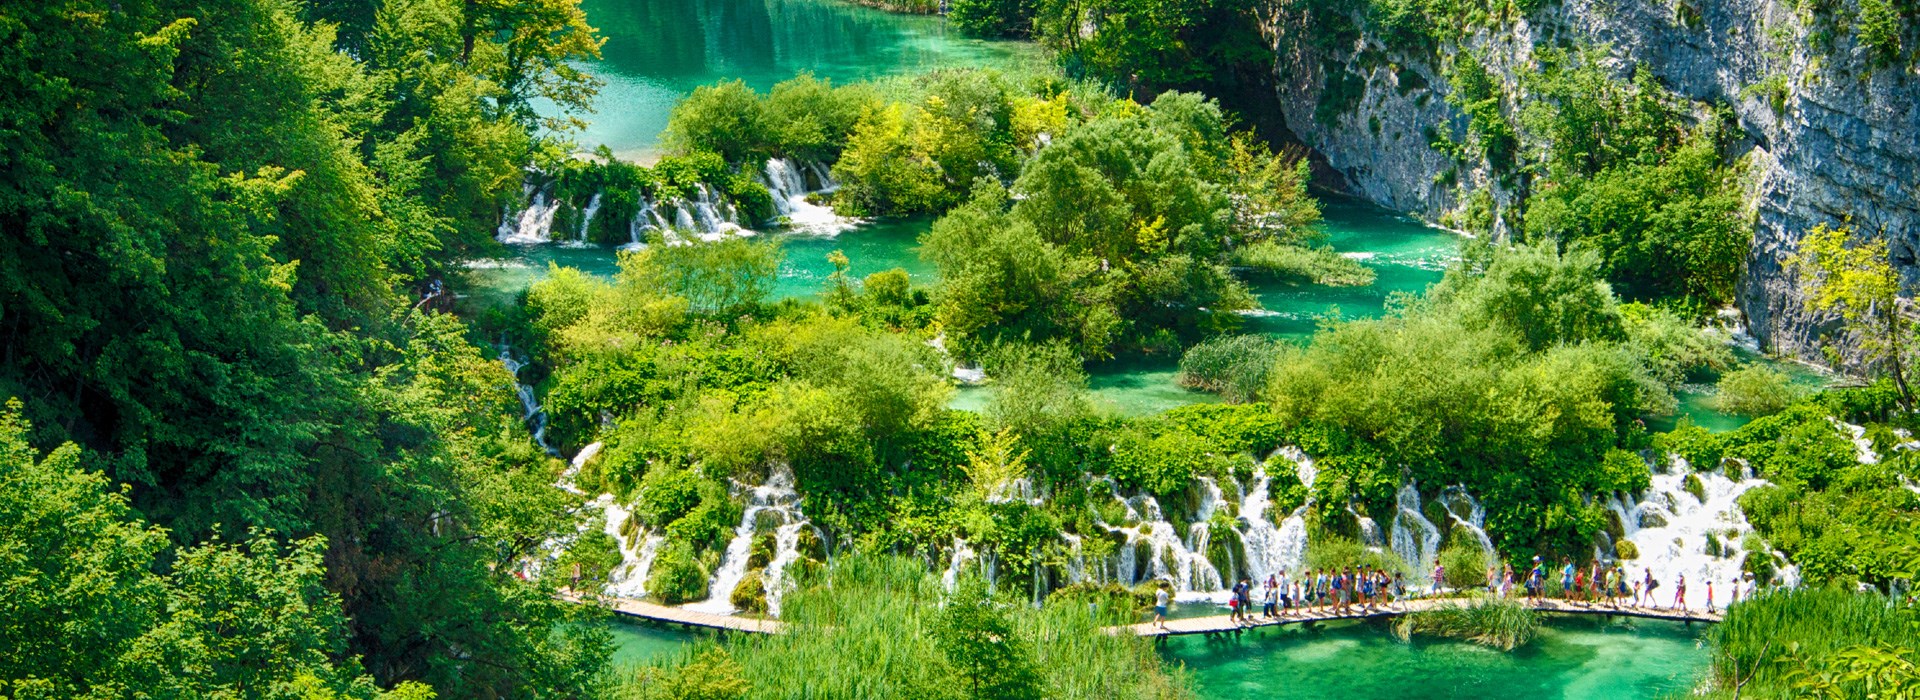 Visiter Le parc national de Plitvice - Croatie